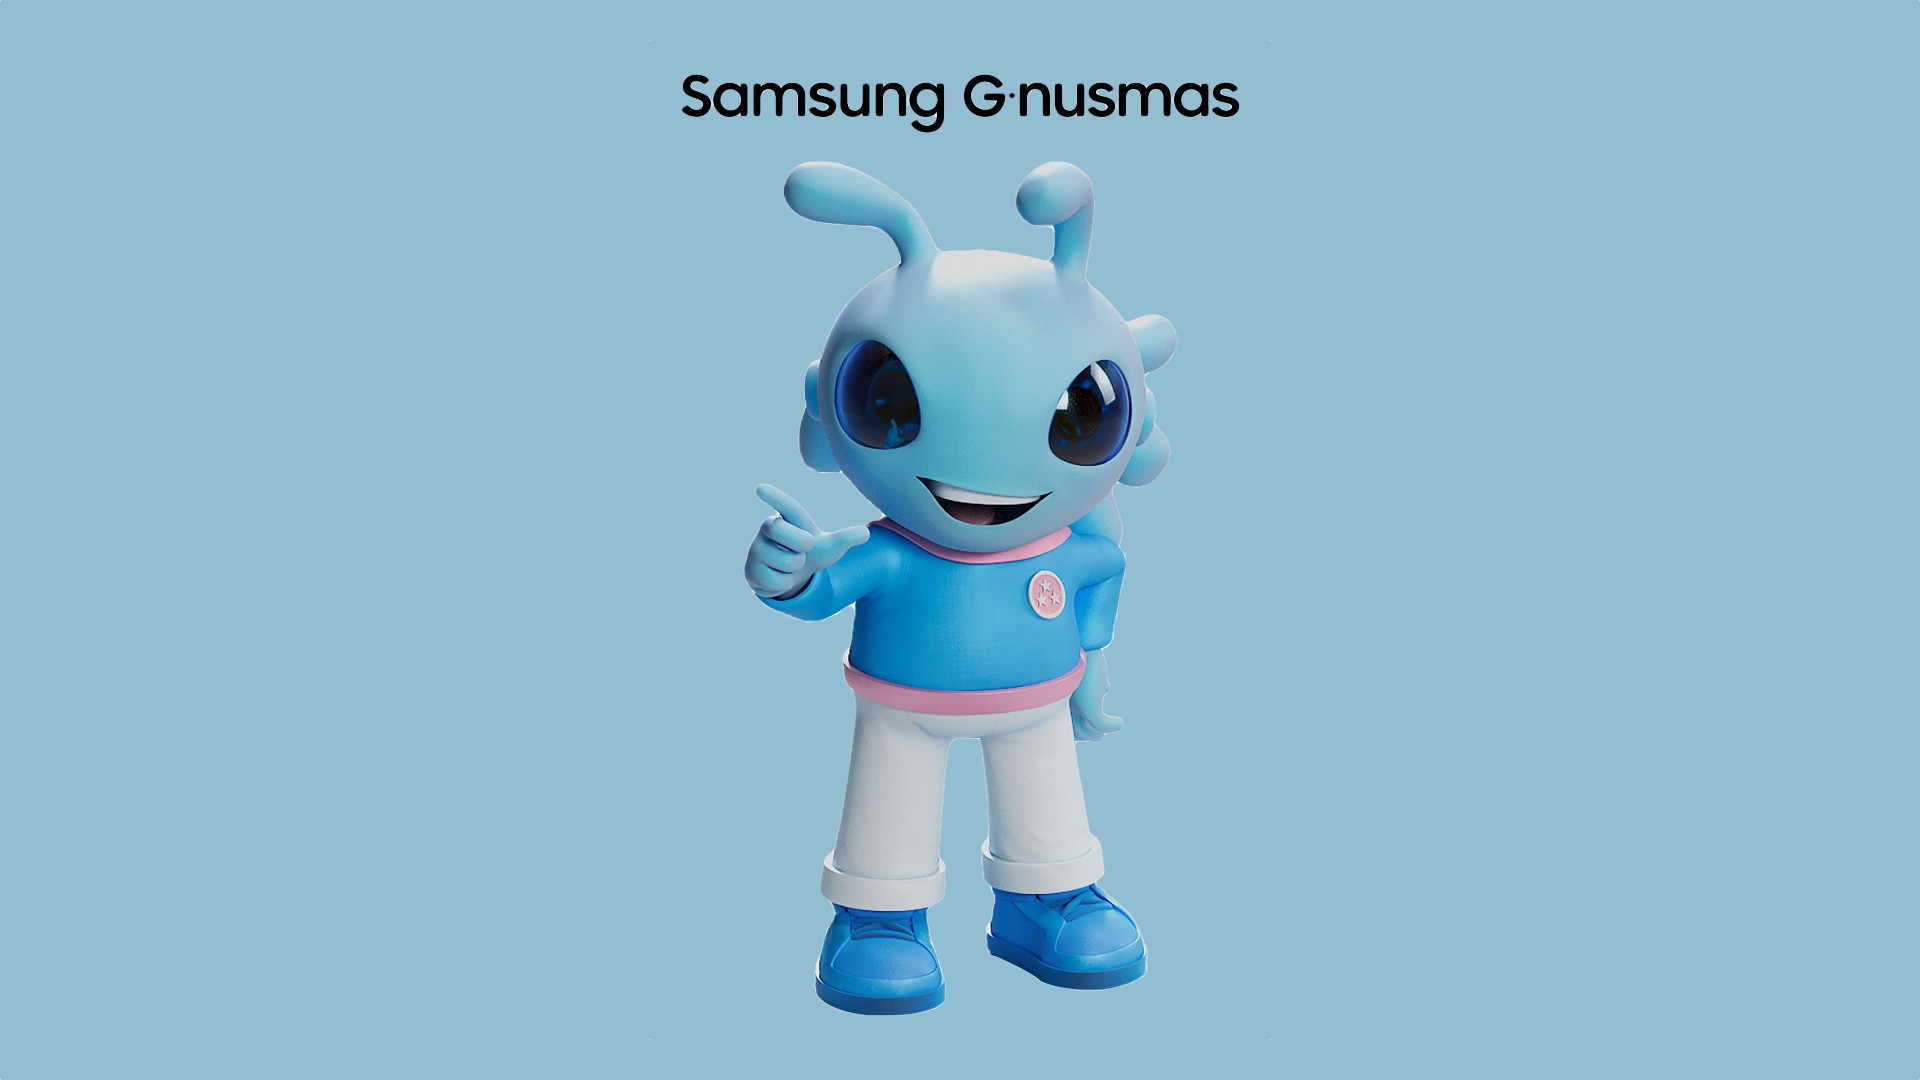 Treffen Sie G-nusmas - das neue offizielle Maskottchen von Samsung